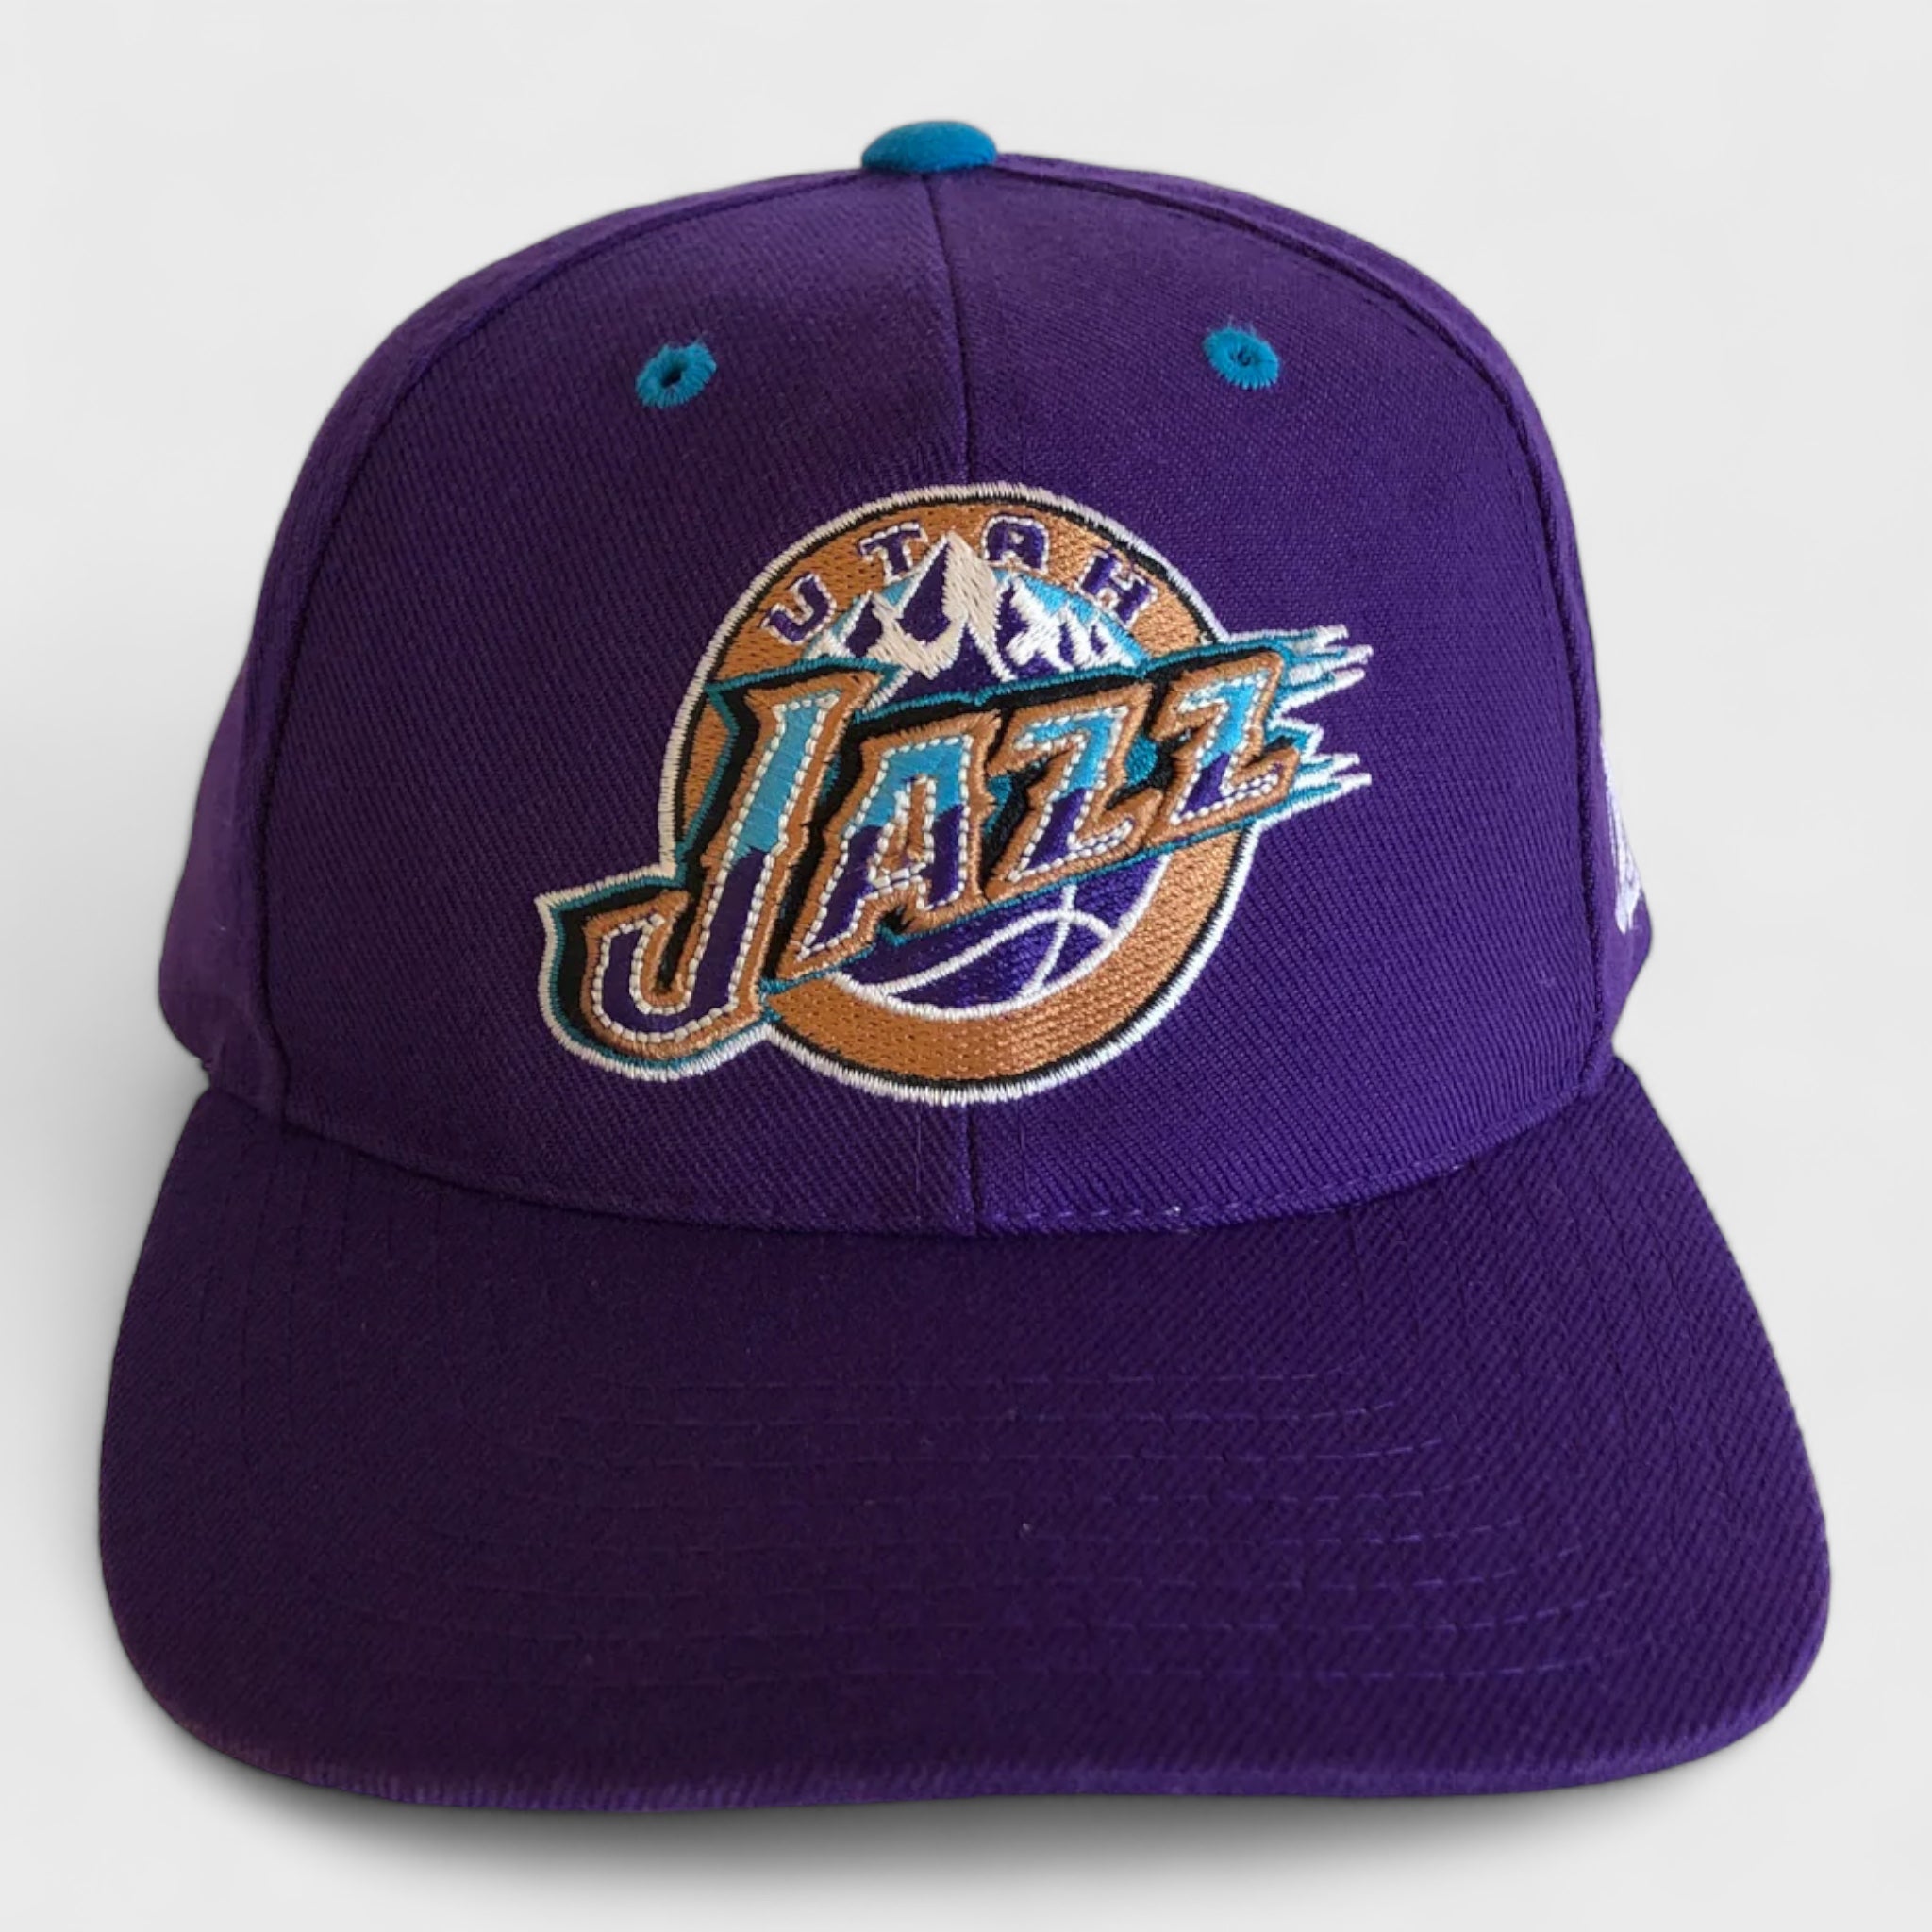 Vintage Utah Jazz Snapback Hat